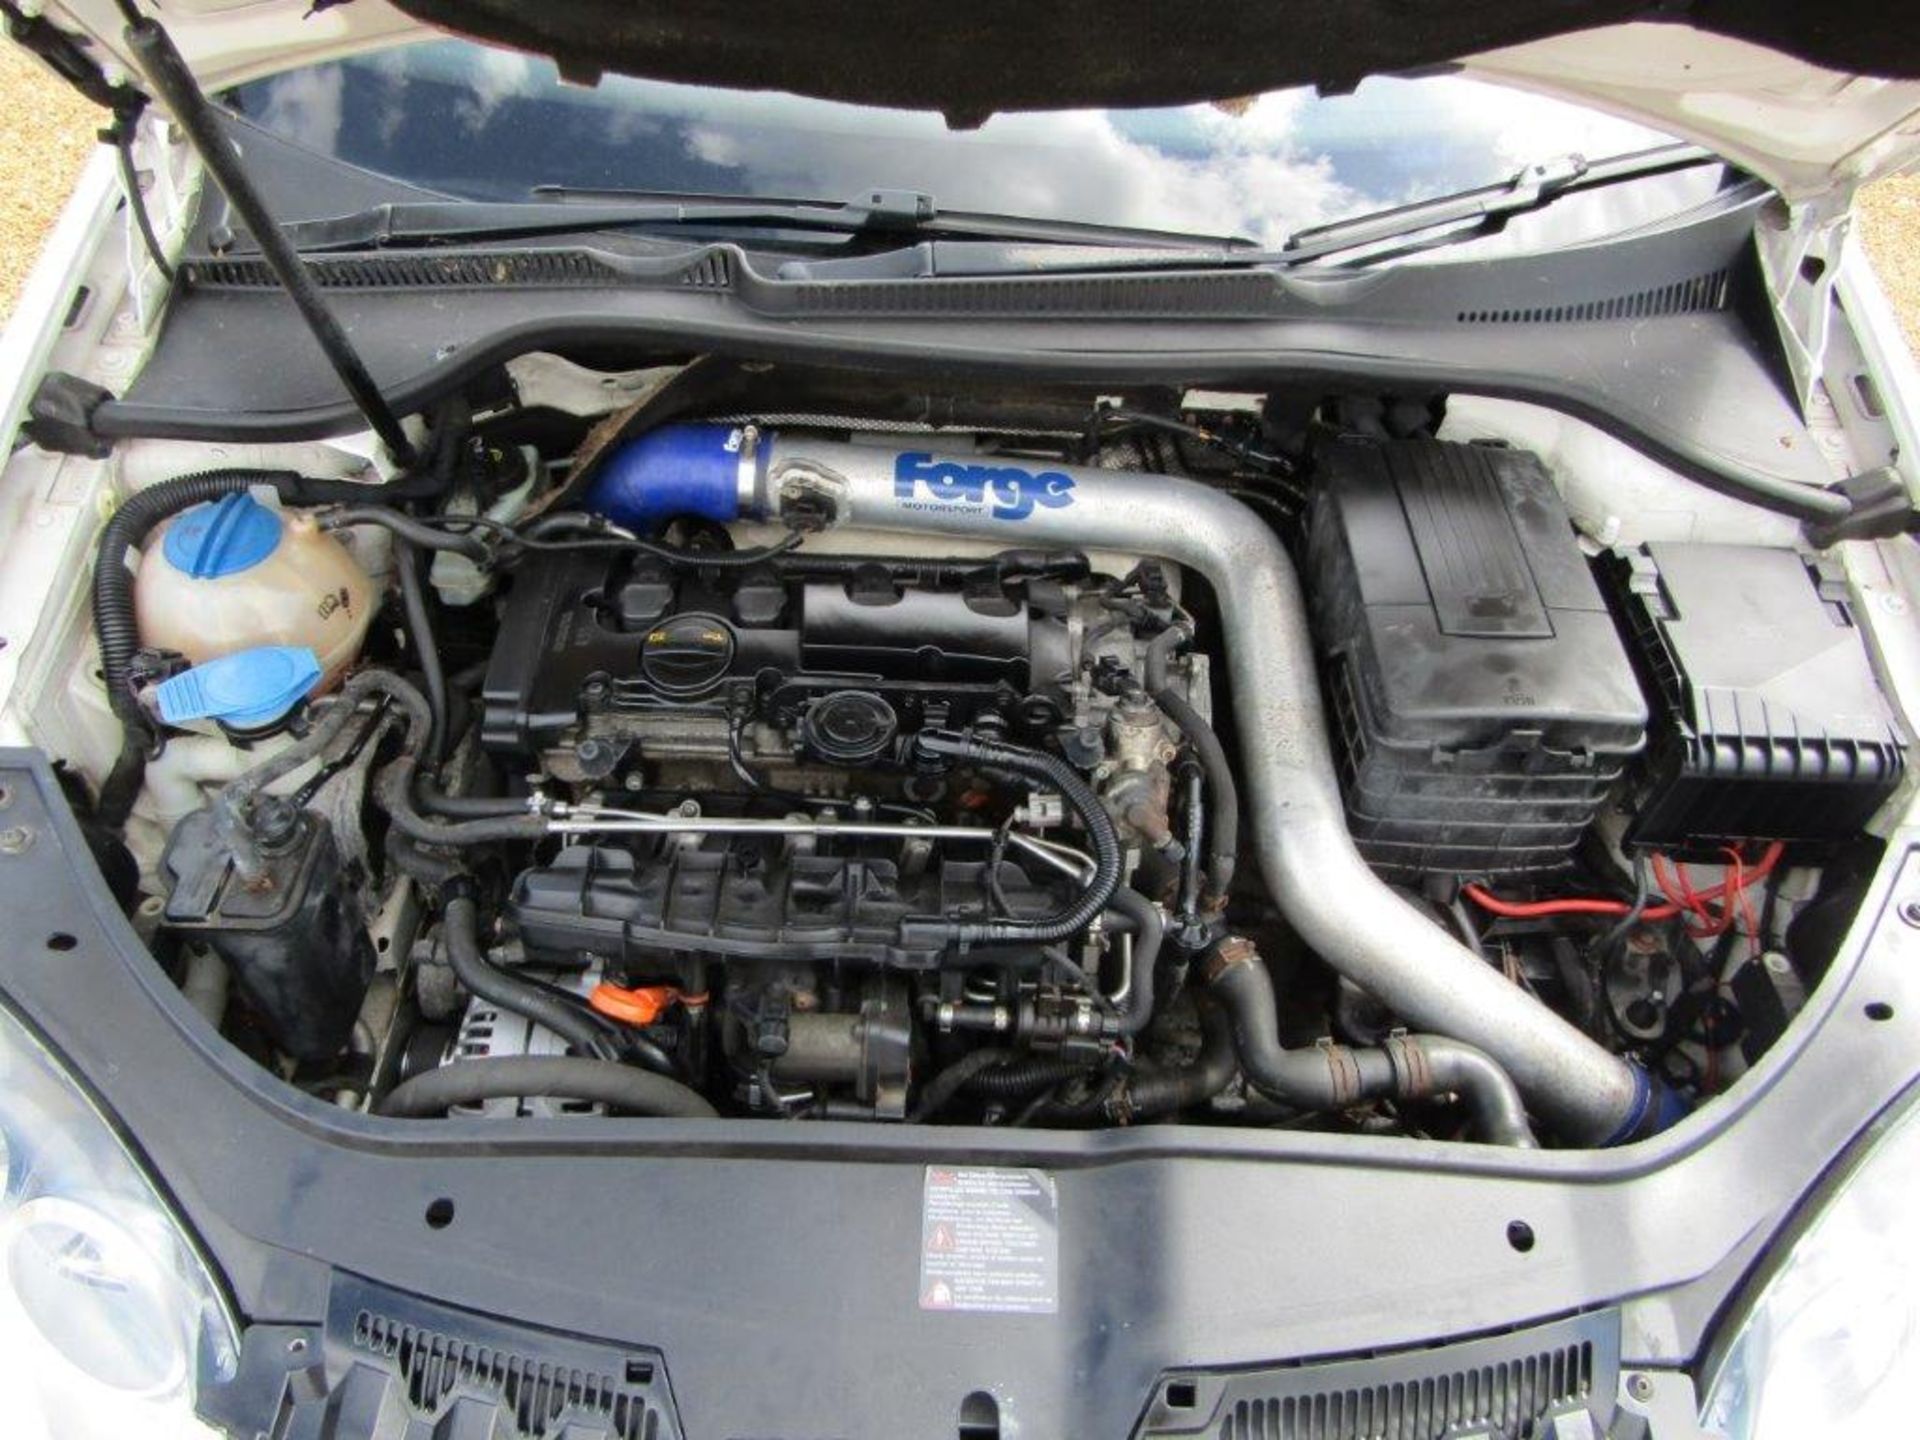 62 12 Ford Focus Titanium Turbo - Image 3 of 23